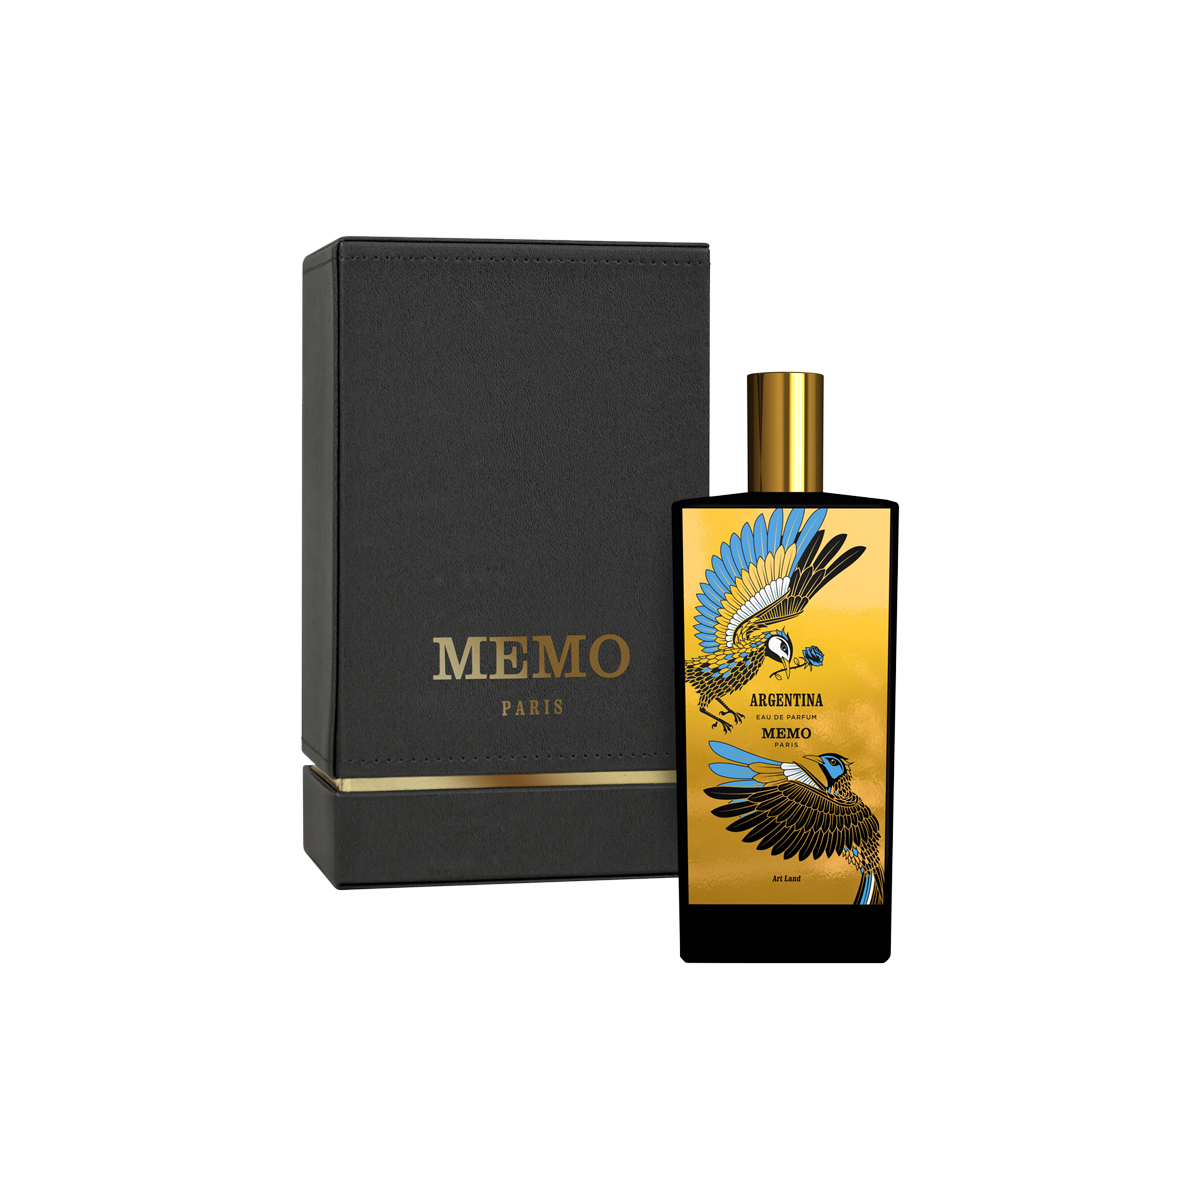 Memo Paris - Argentina Eau de Parfum